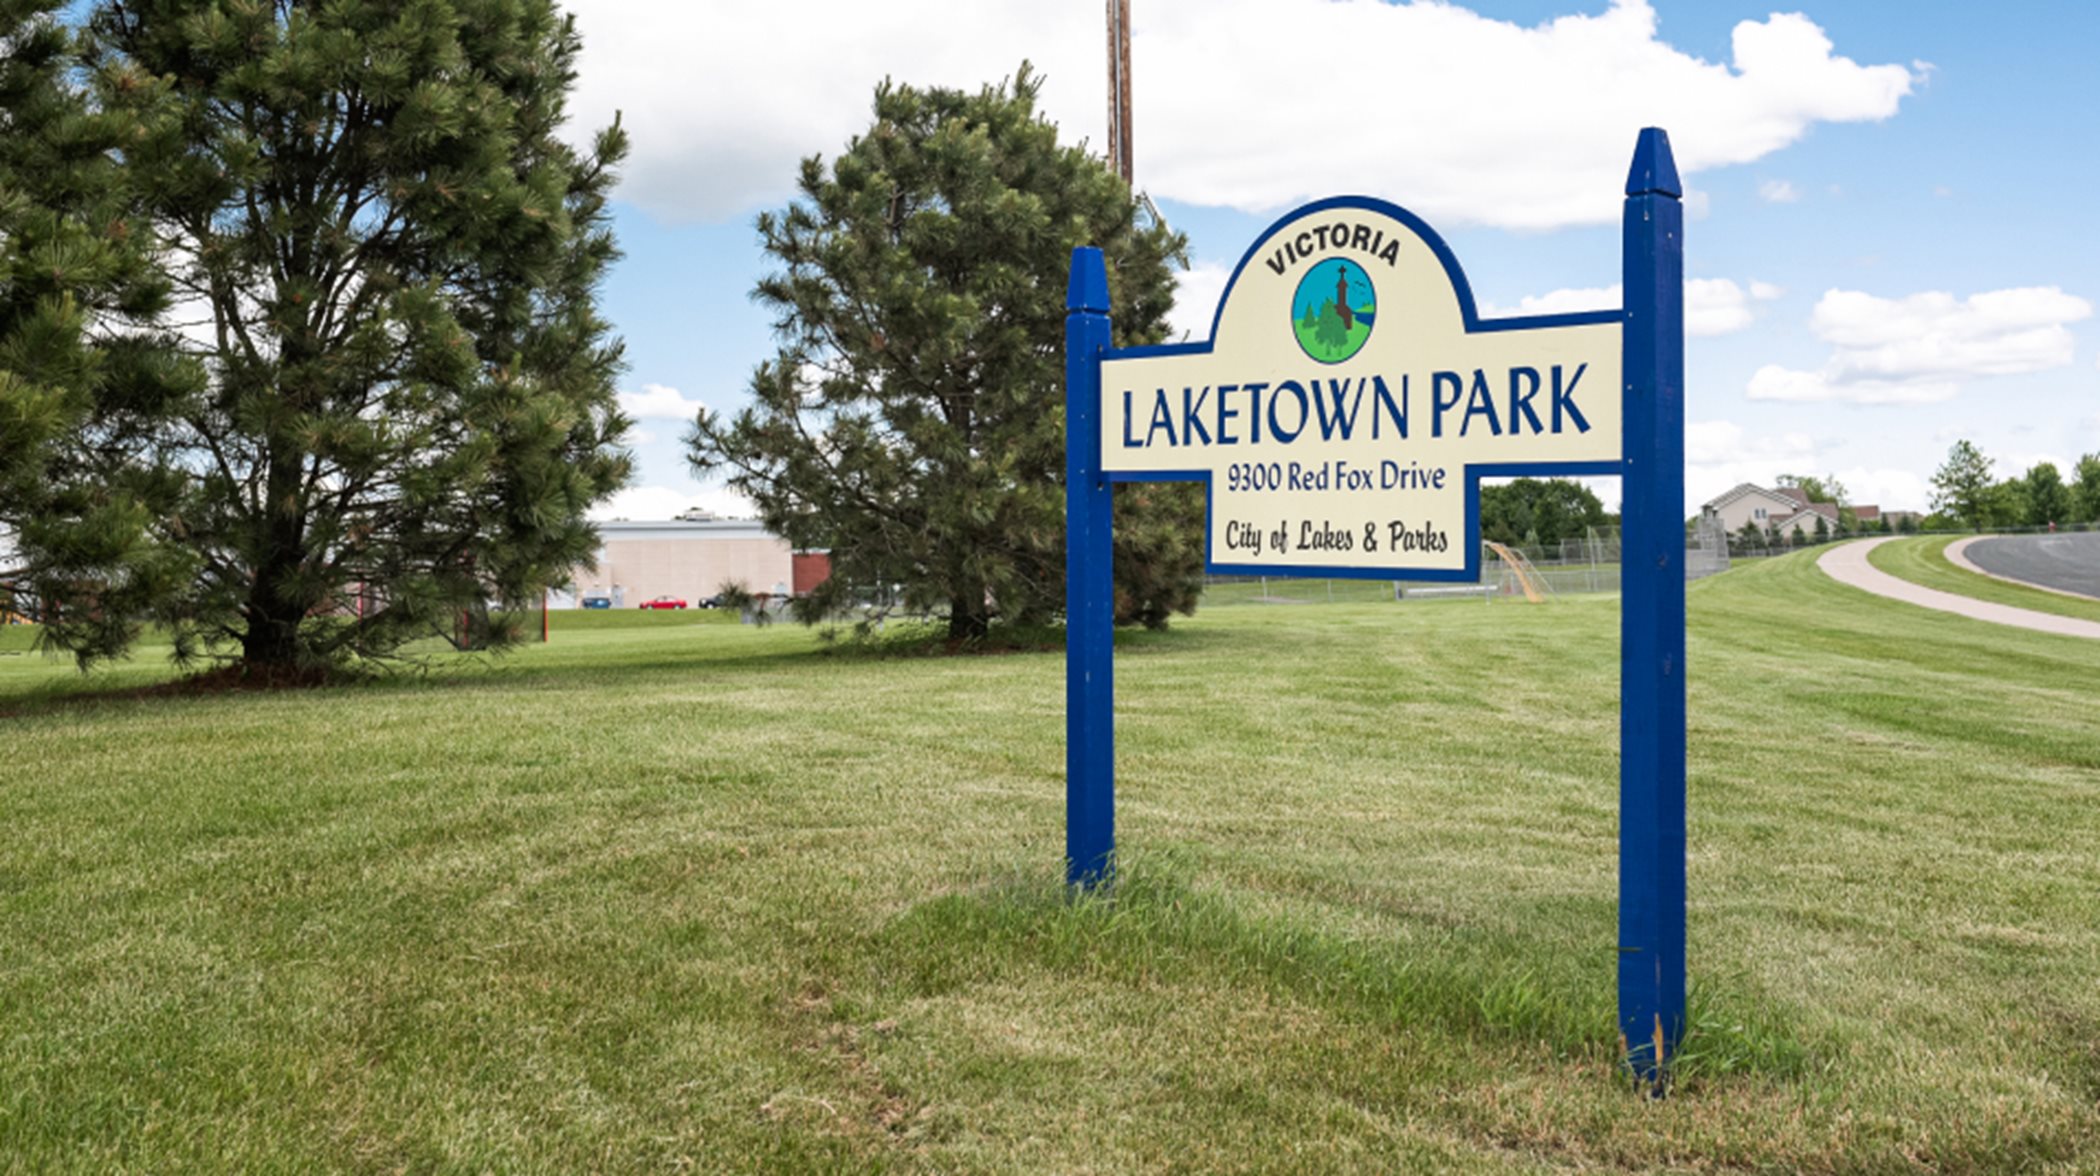 Laketown soccer field, basketball court, baseball